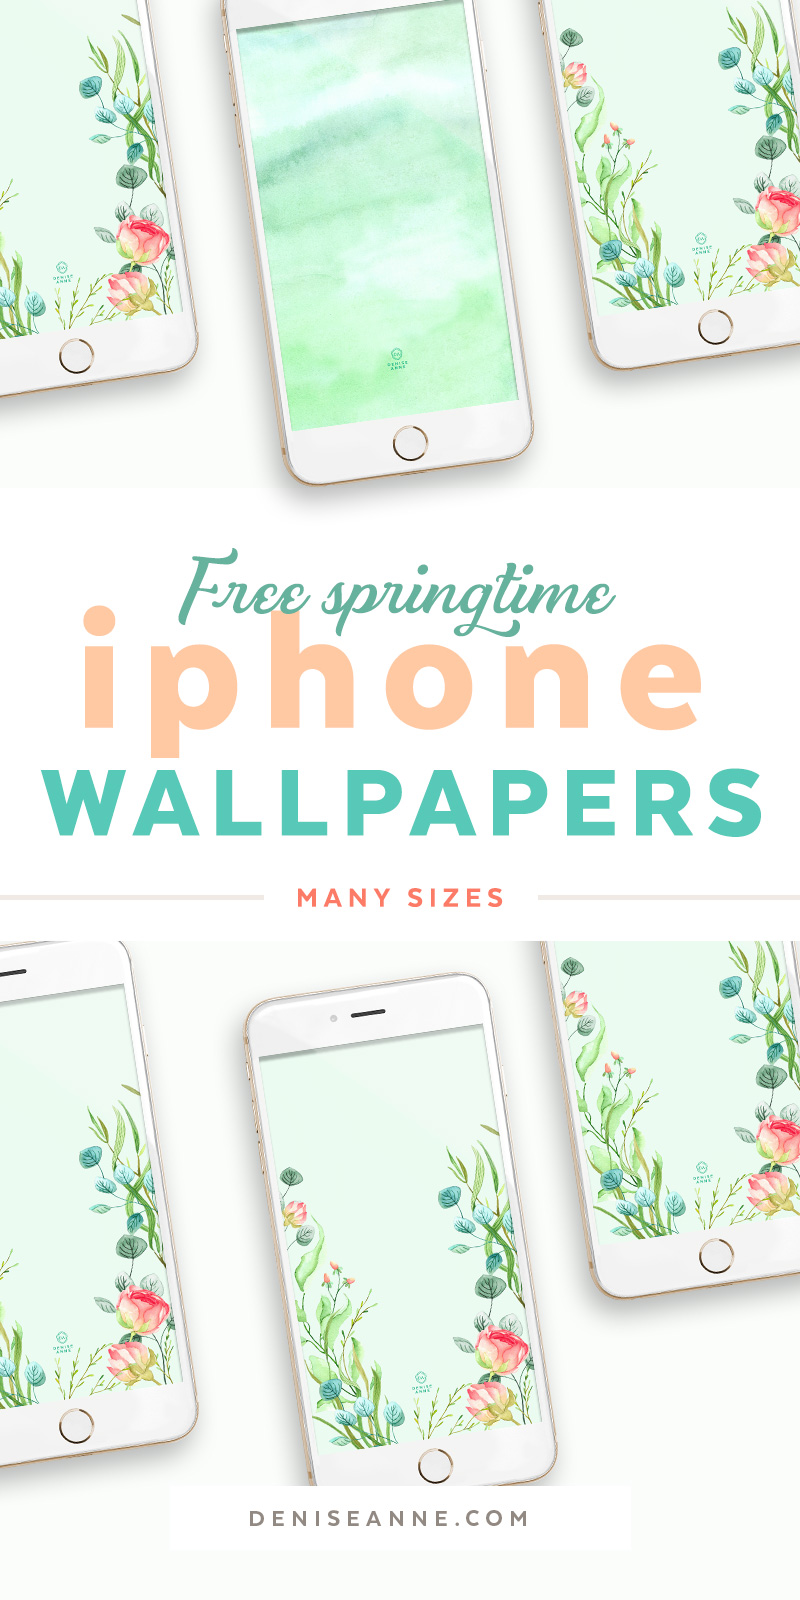 Iphone Designer Wallpapers